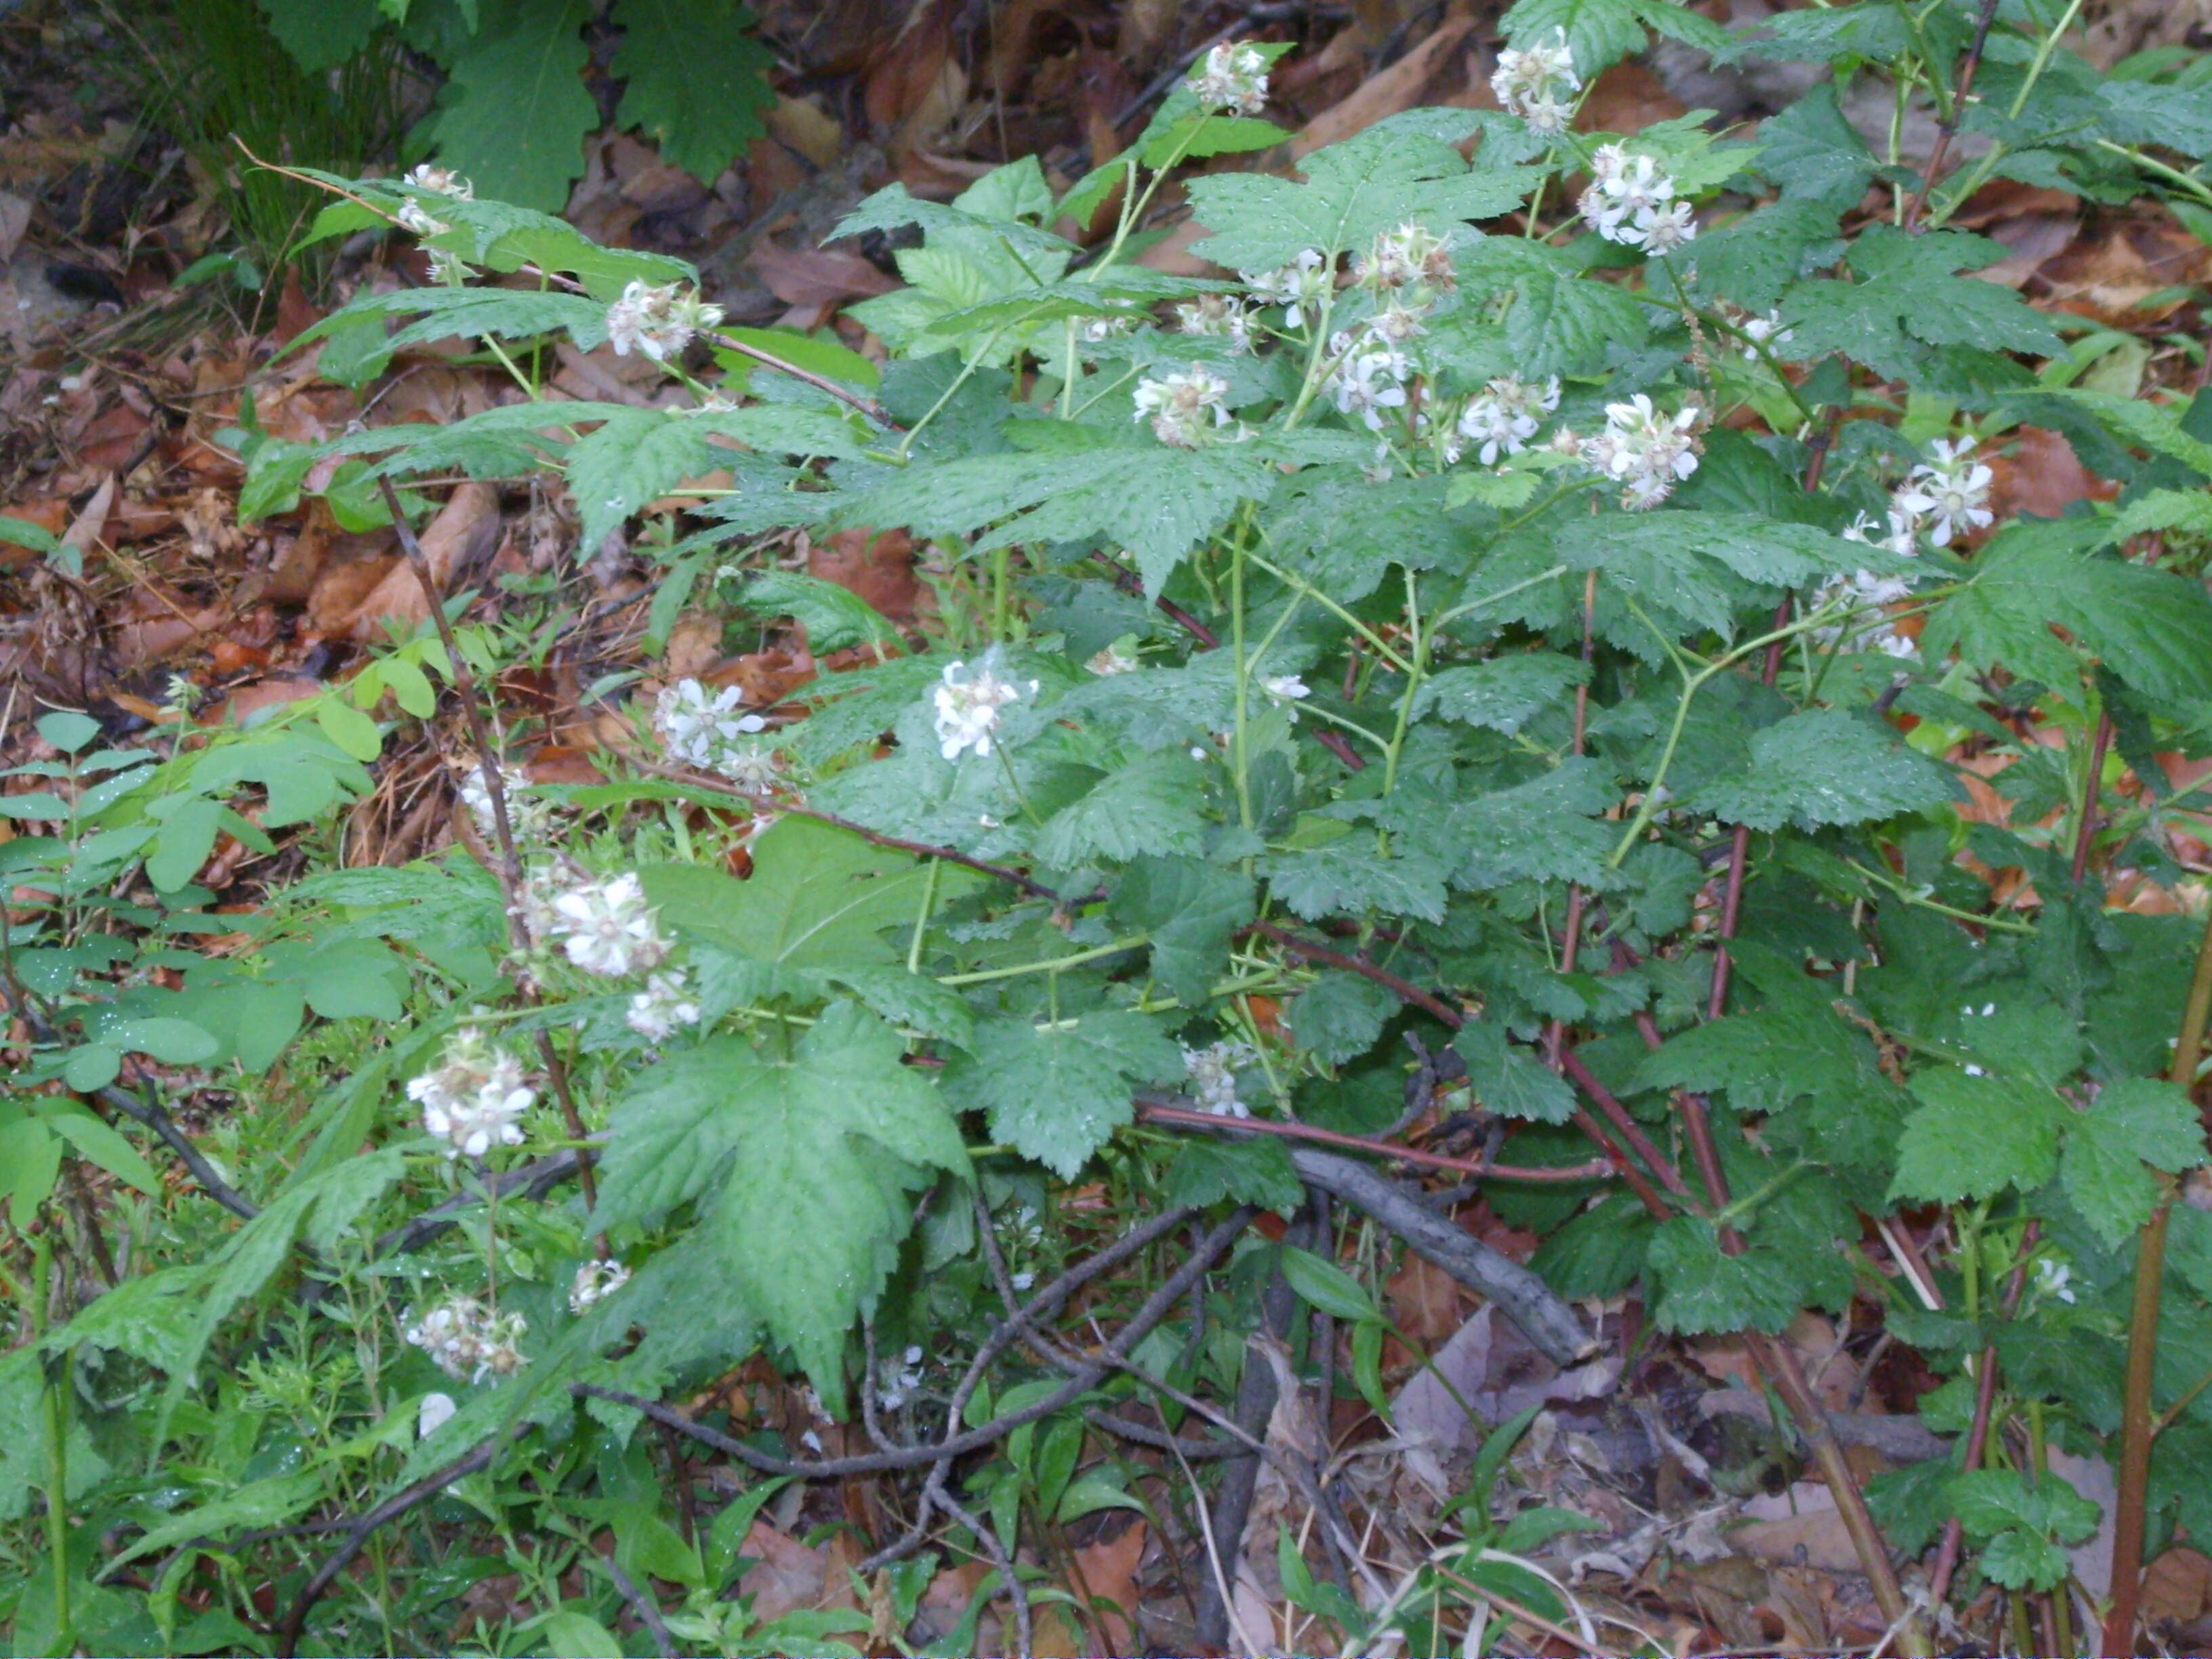 Image of Rubus crataegifolius Bunge